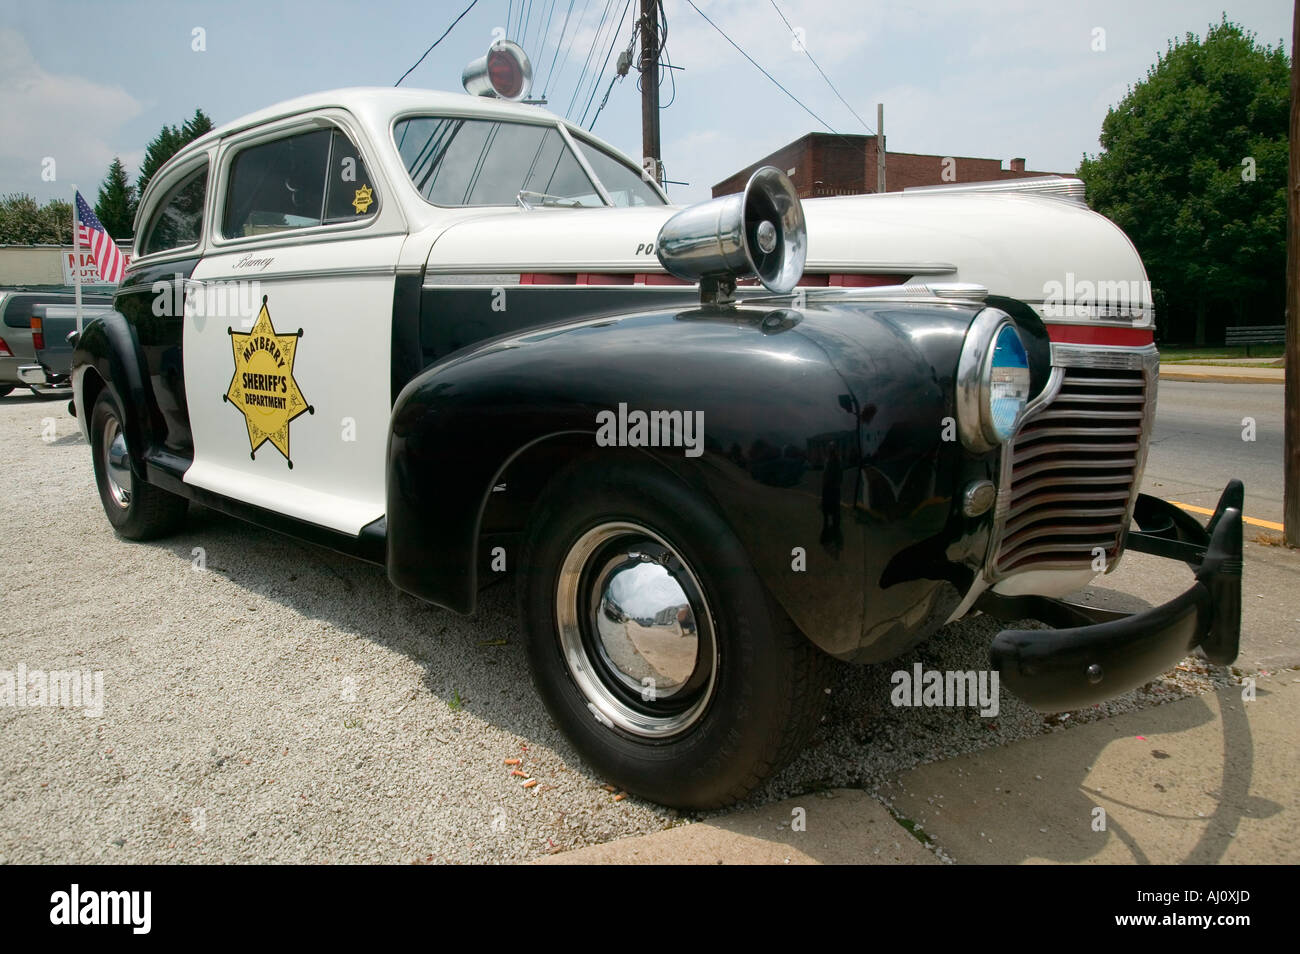 Mayberry Sheriff s Abteilung Polizeiauto in Mount Airy North Carolina Stadt Sonderangebot-Mayberry RFD und Heimat von Andy Stockfoto